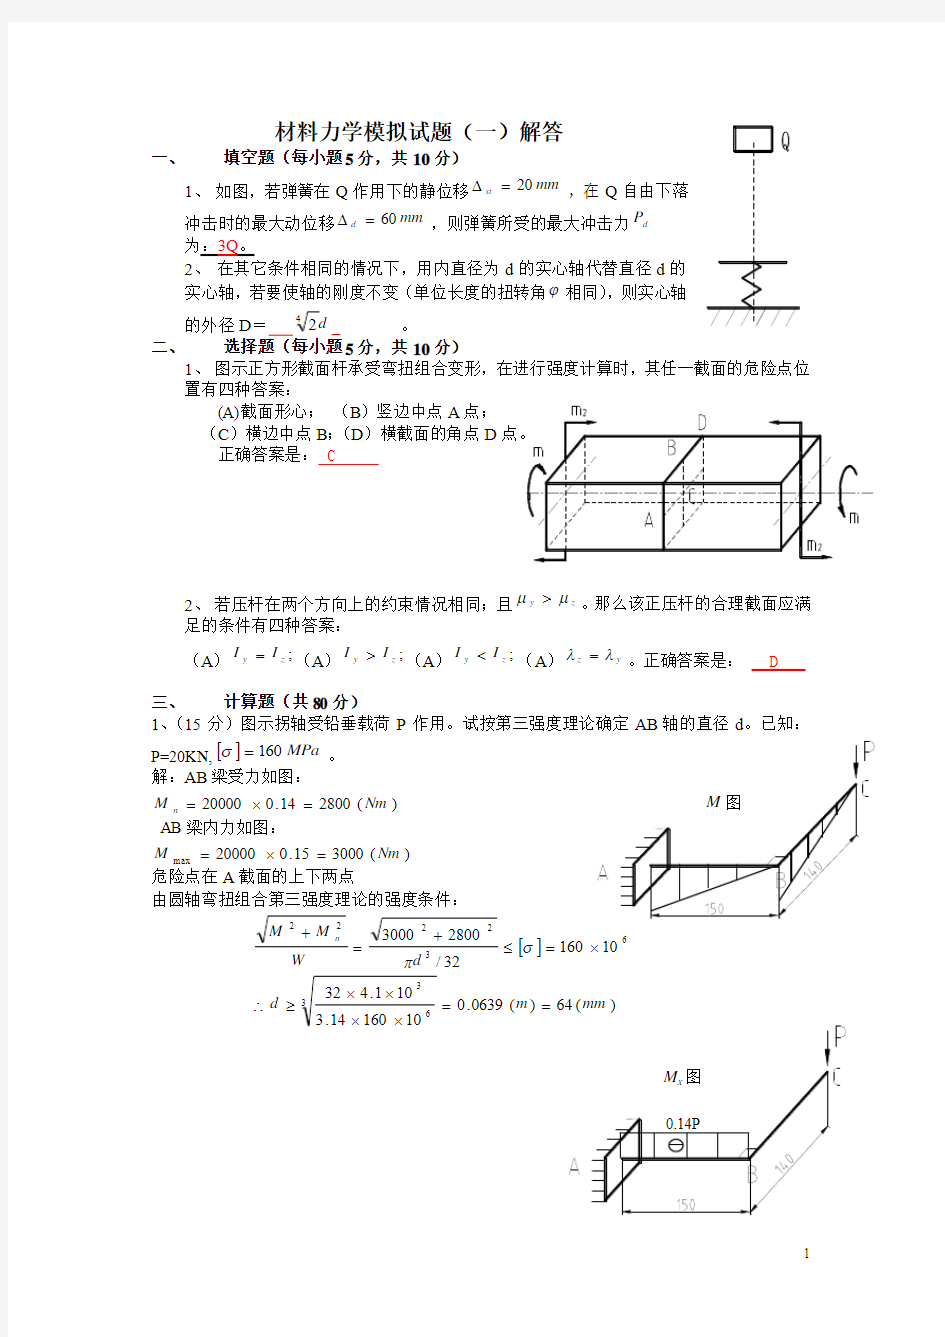 江苏大学材料力学5套模拟试题(详细)